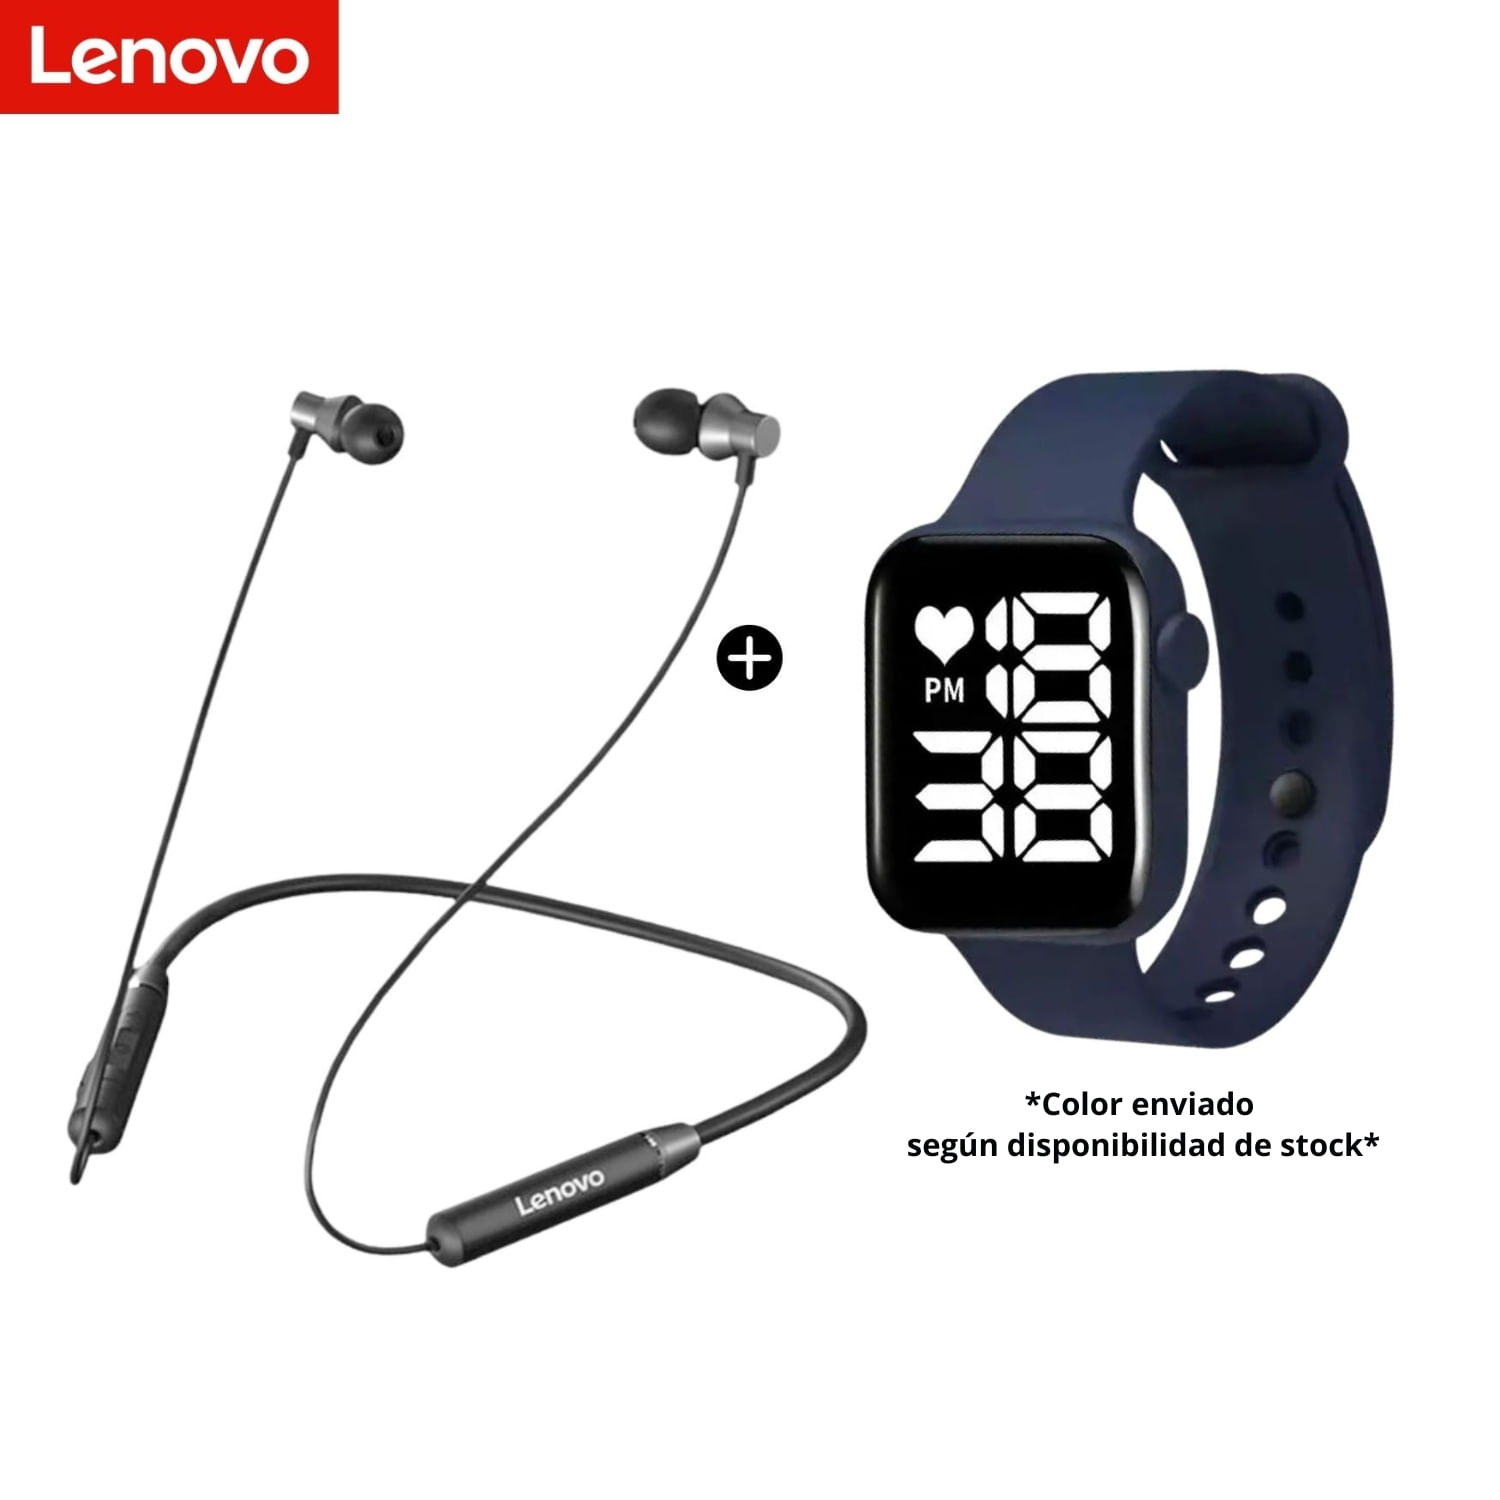 Audifonos Bluetooth Lenovo HE05 mas Reloj Led Watch